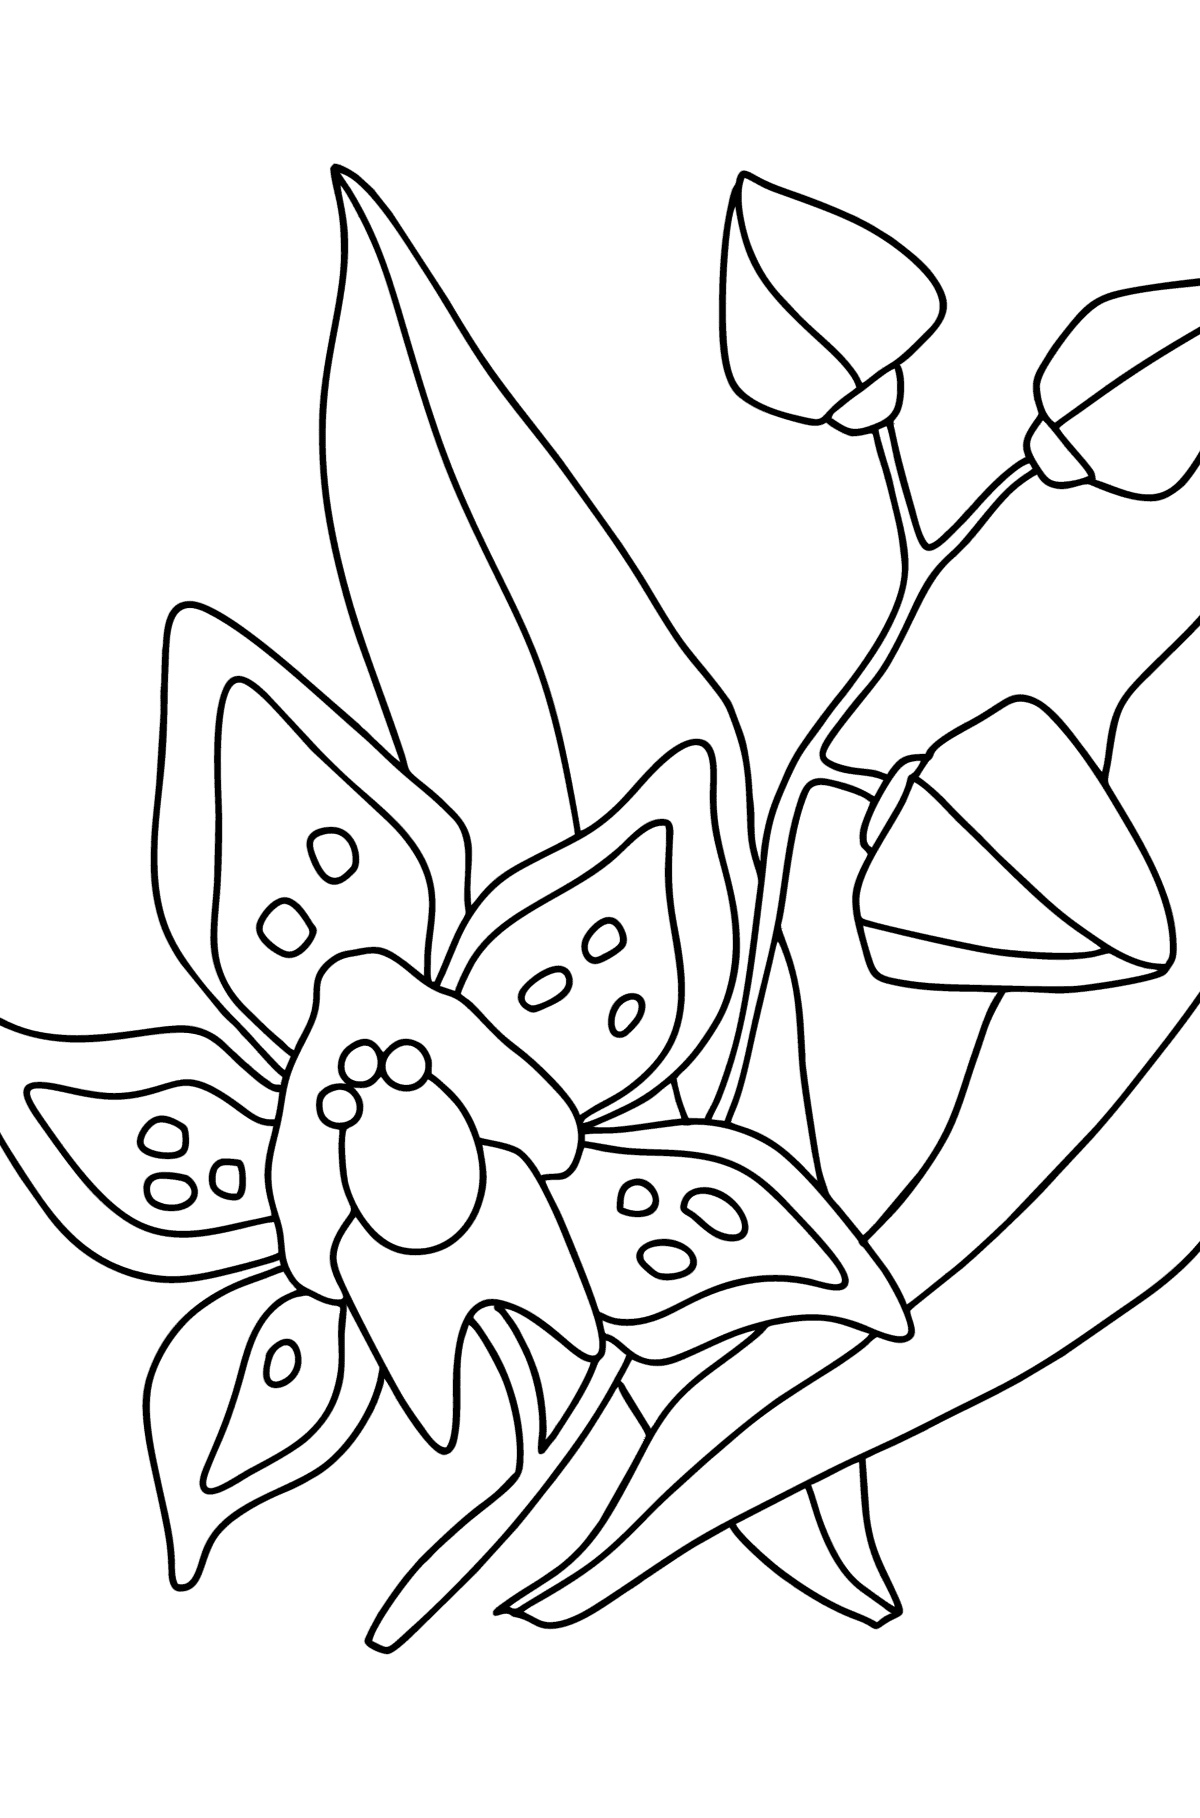 Kleurplaat Orchidee - kleurplaten voor kinderen